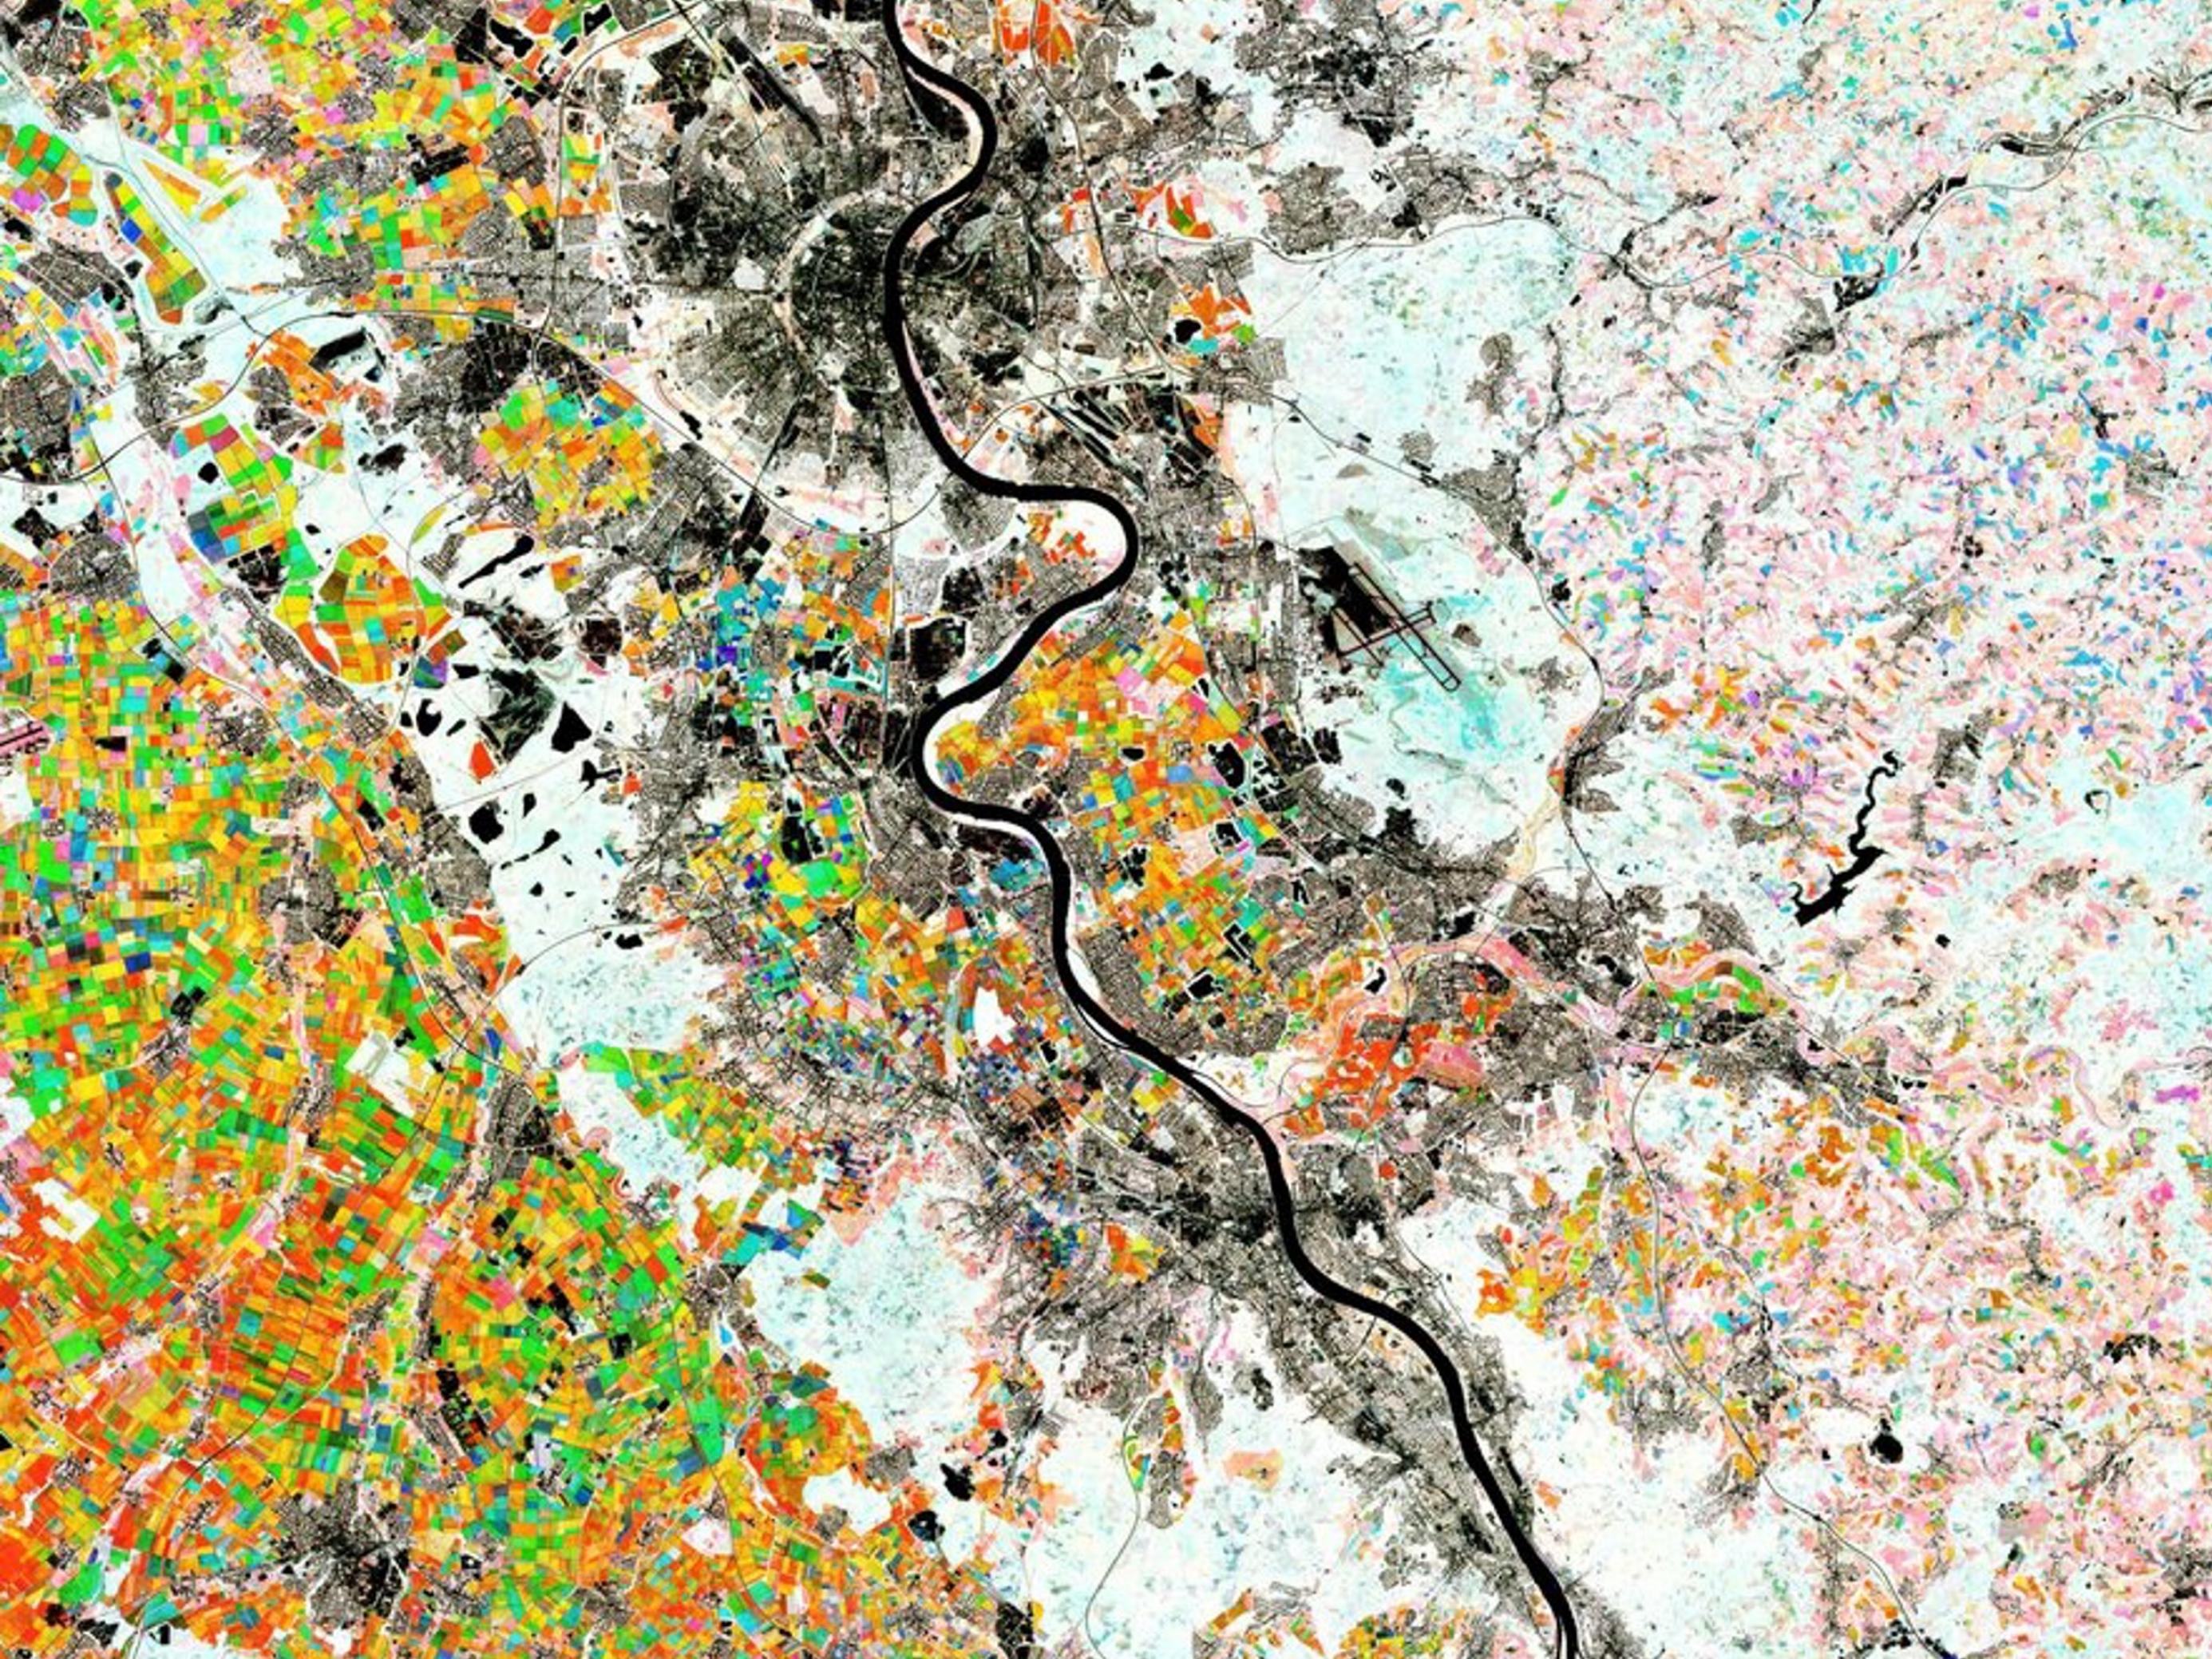 Luftbild mit dem Rhein als schwarzer, geschlängelter Linie, großen urbanen Flächen in grau und landwirtschaftlicher Nutzfläche in bunten Farben